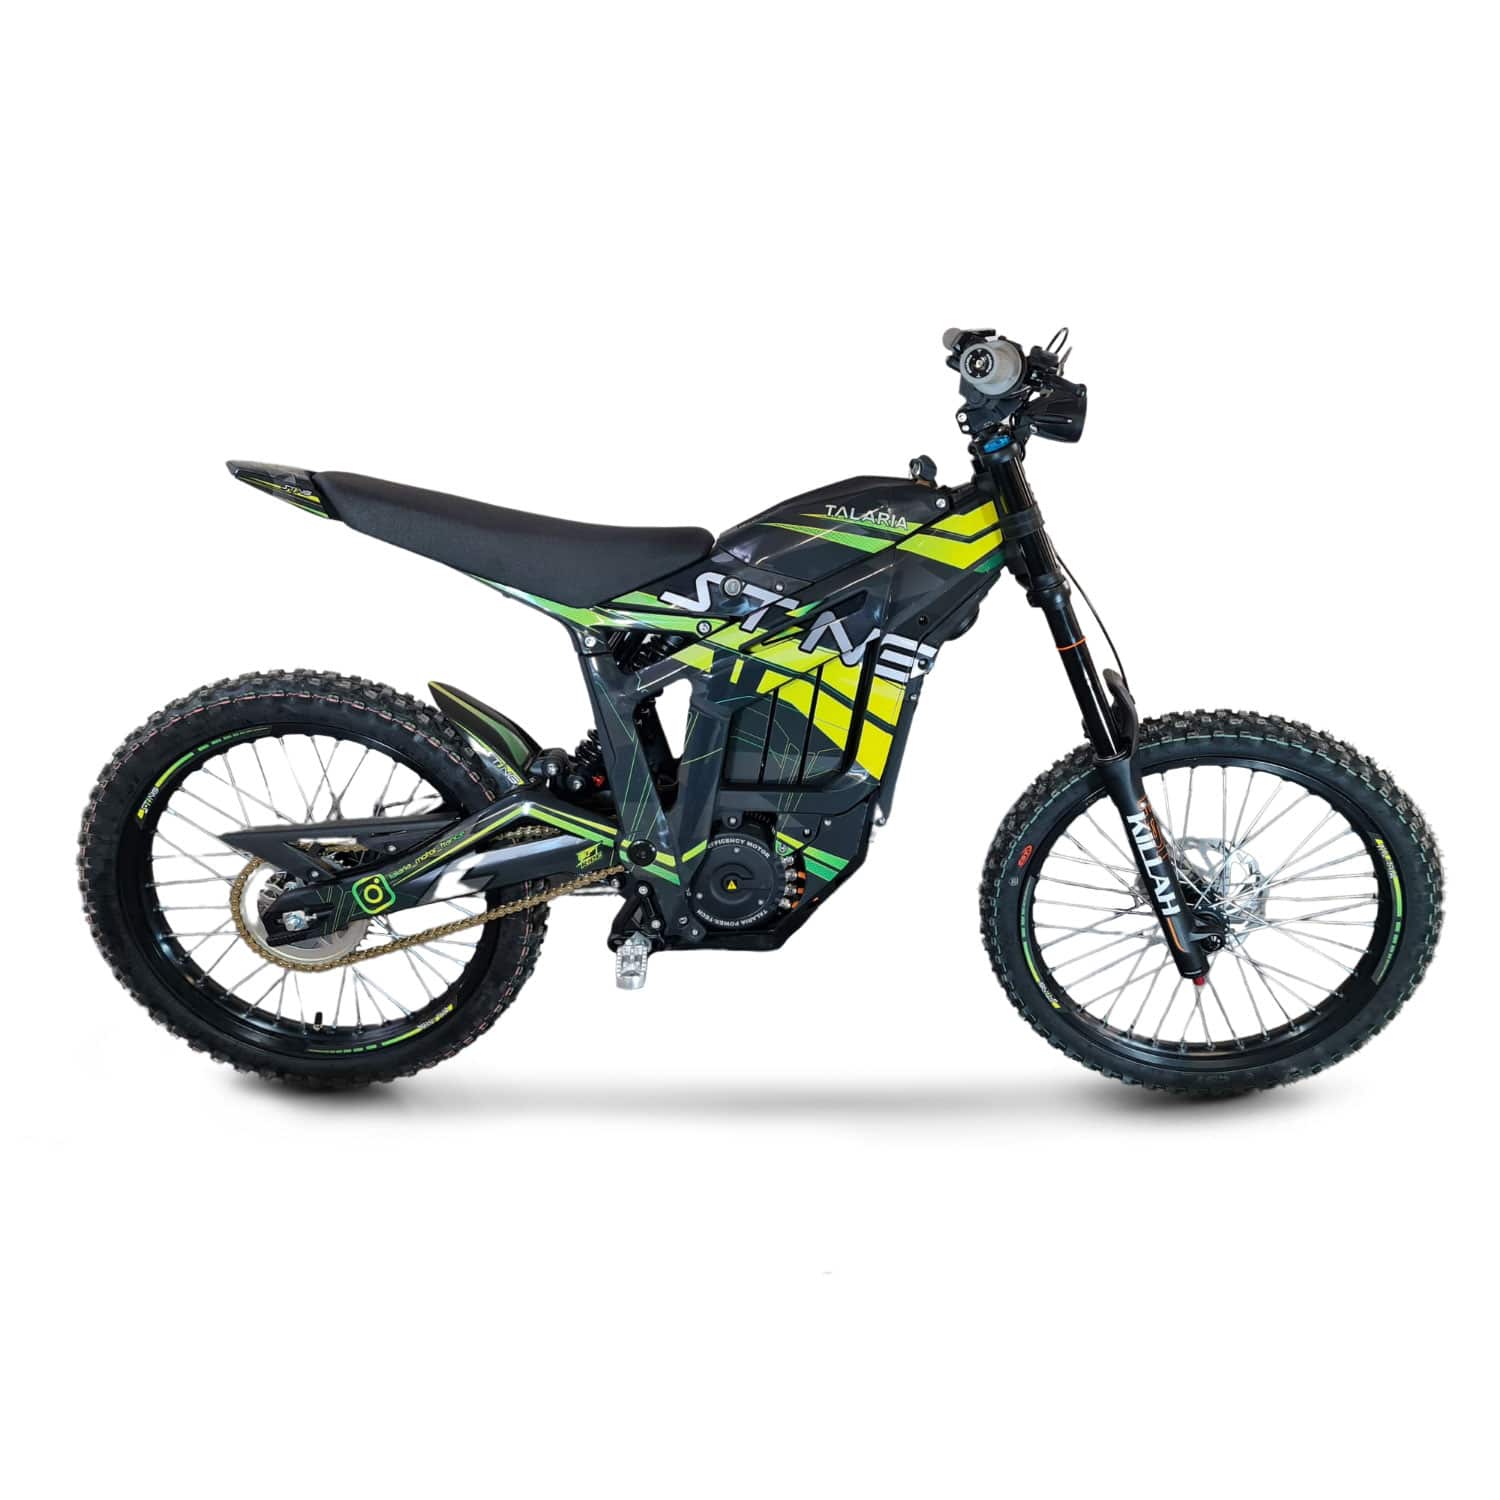 Krax Moto: Boutique de vente d'accessoires de moto - Krax-Moto